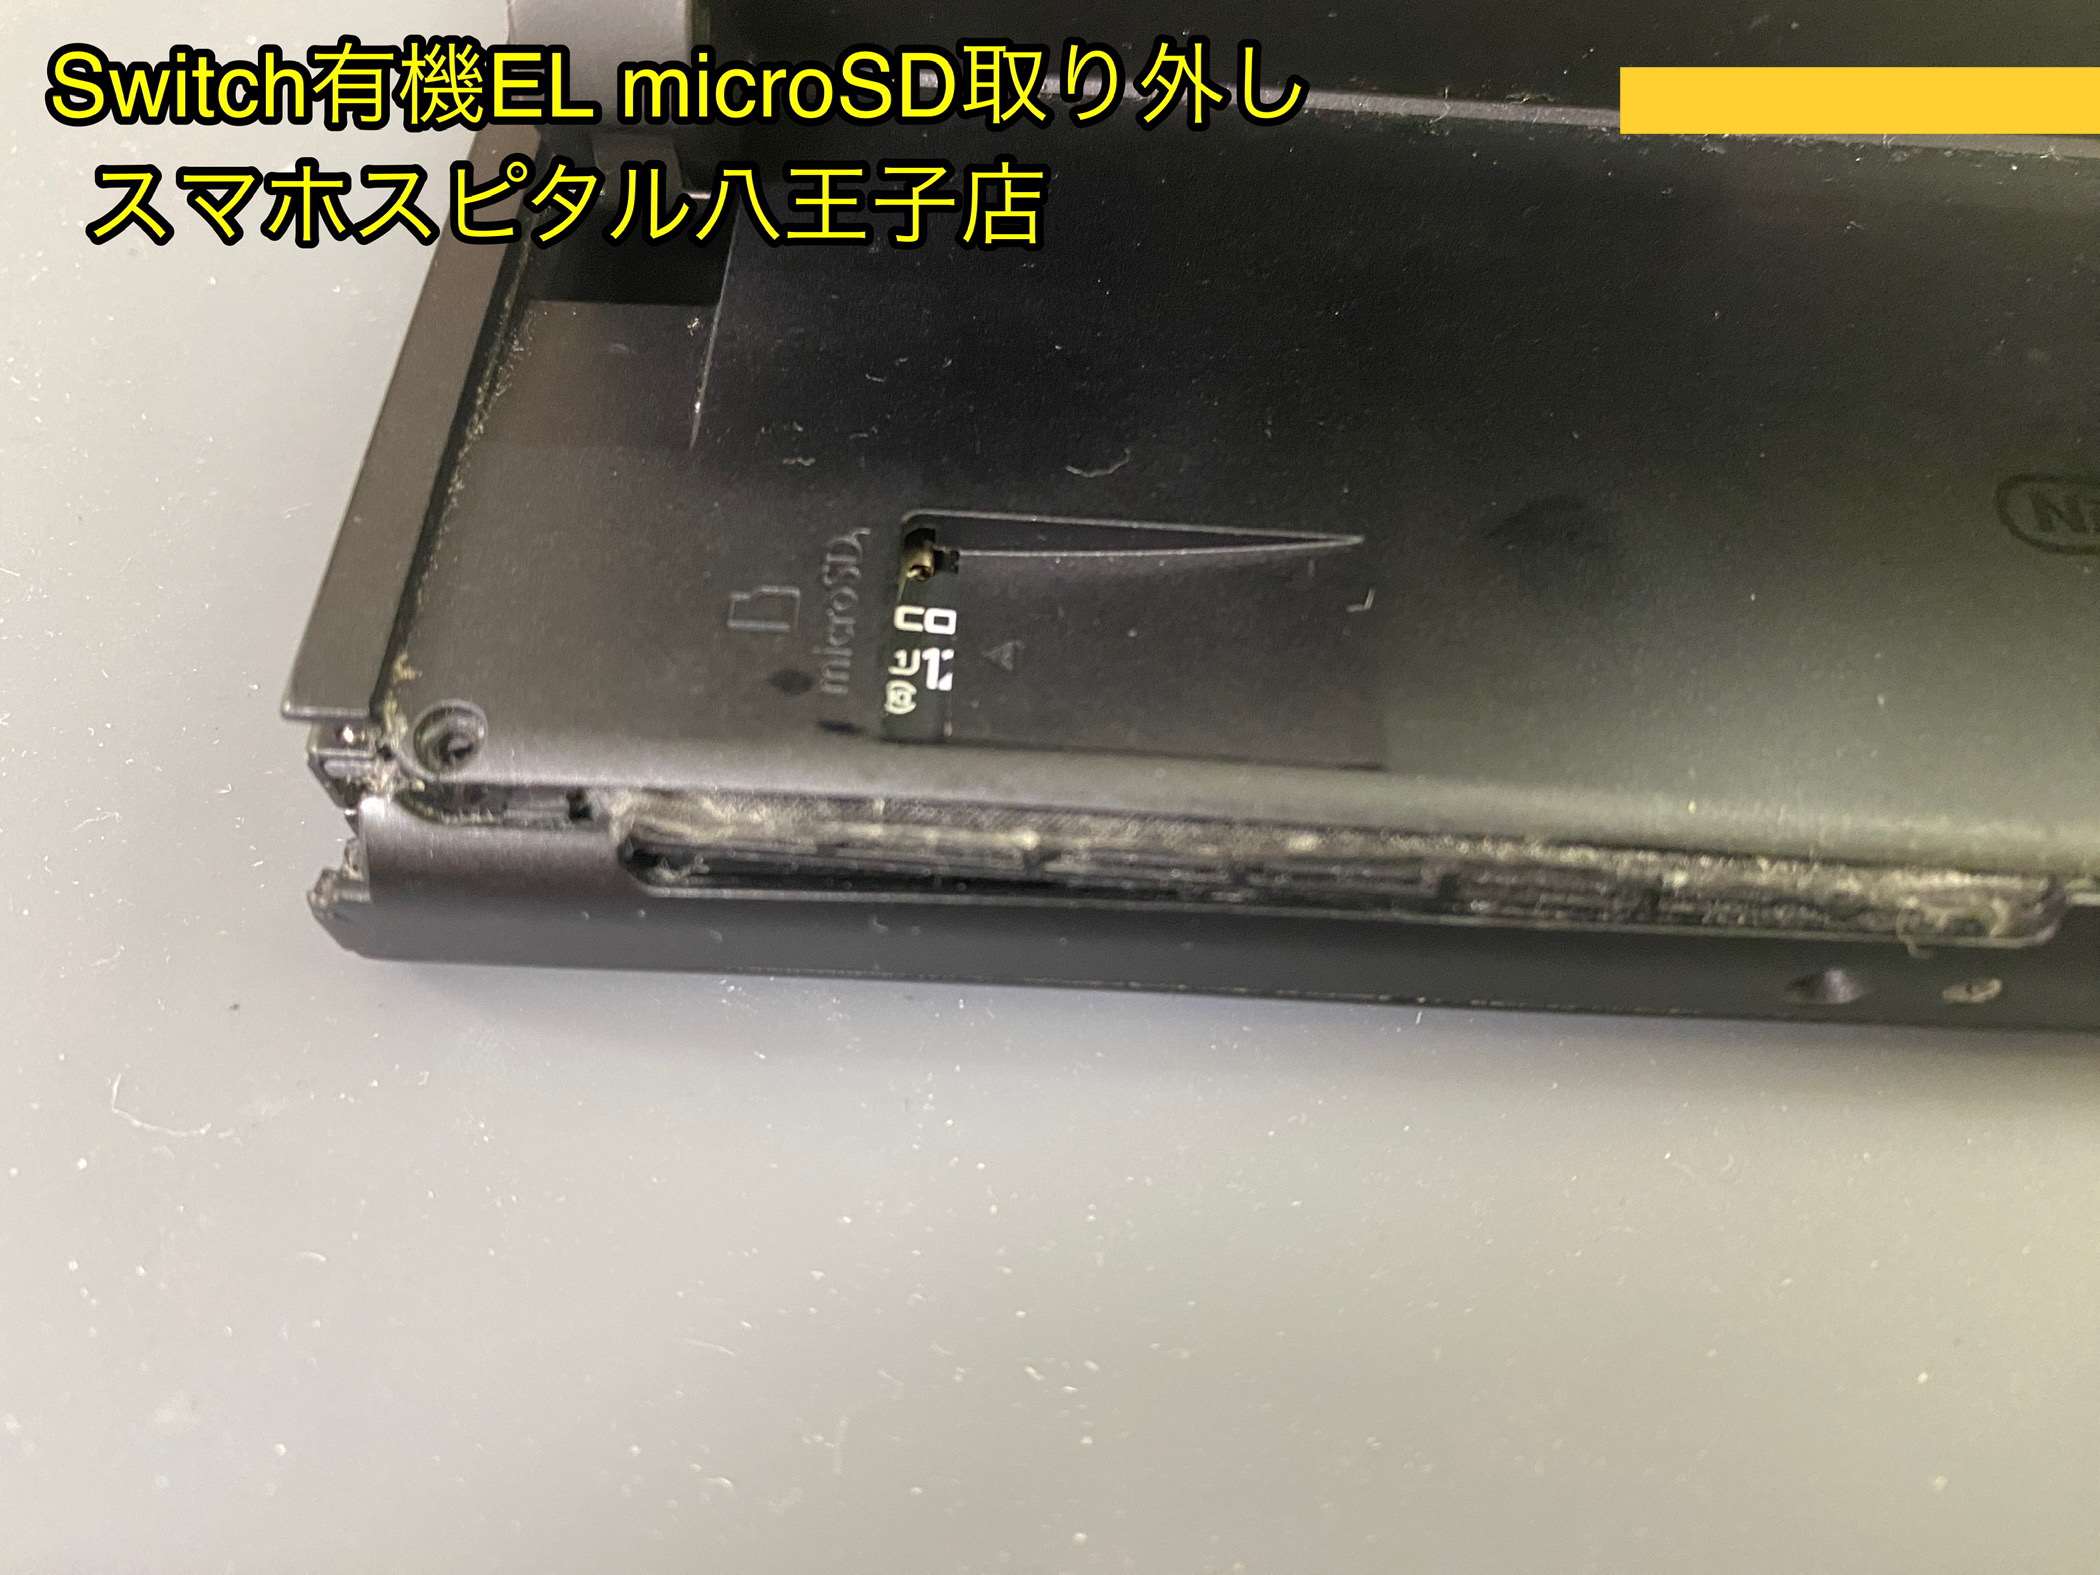 落下によりフレームが破損した任天堂Switch有機ELモデル。microSDが 